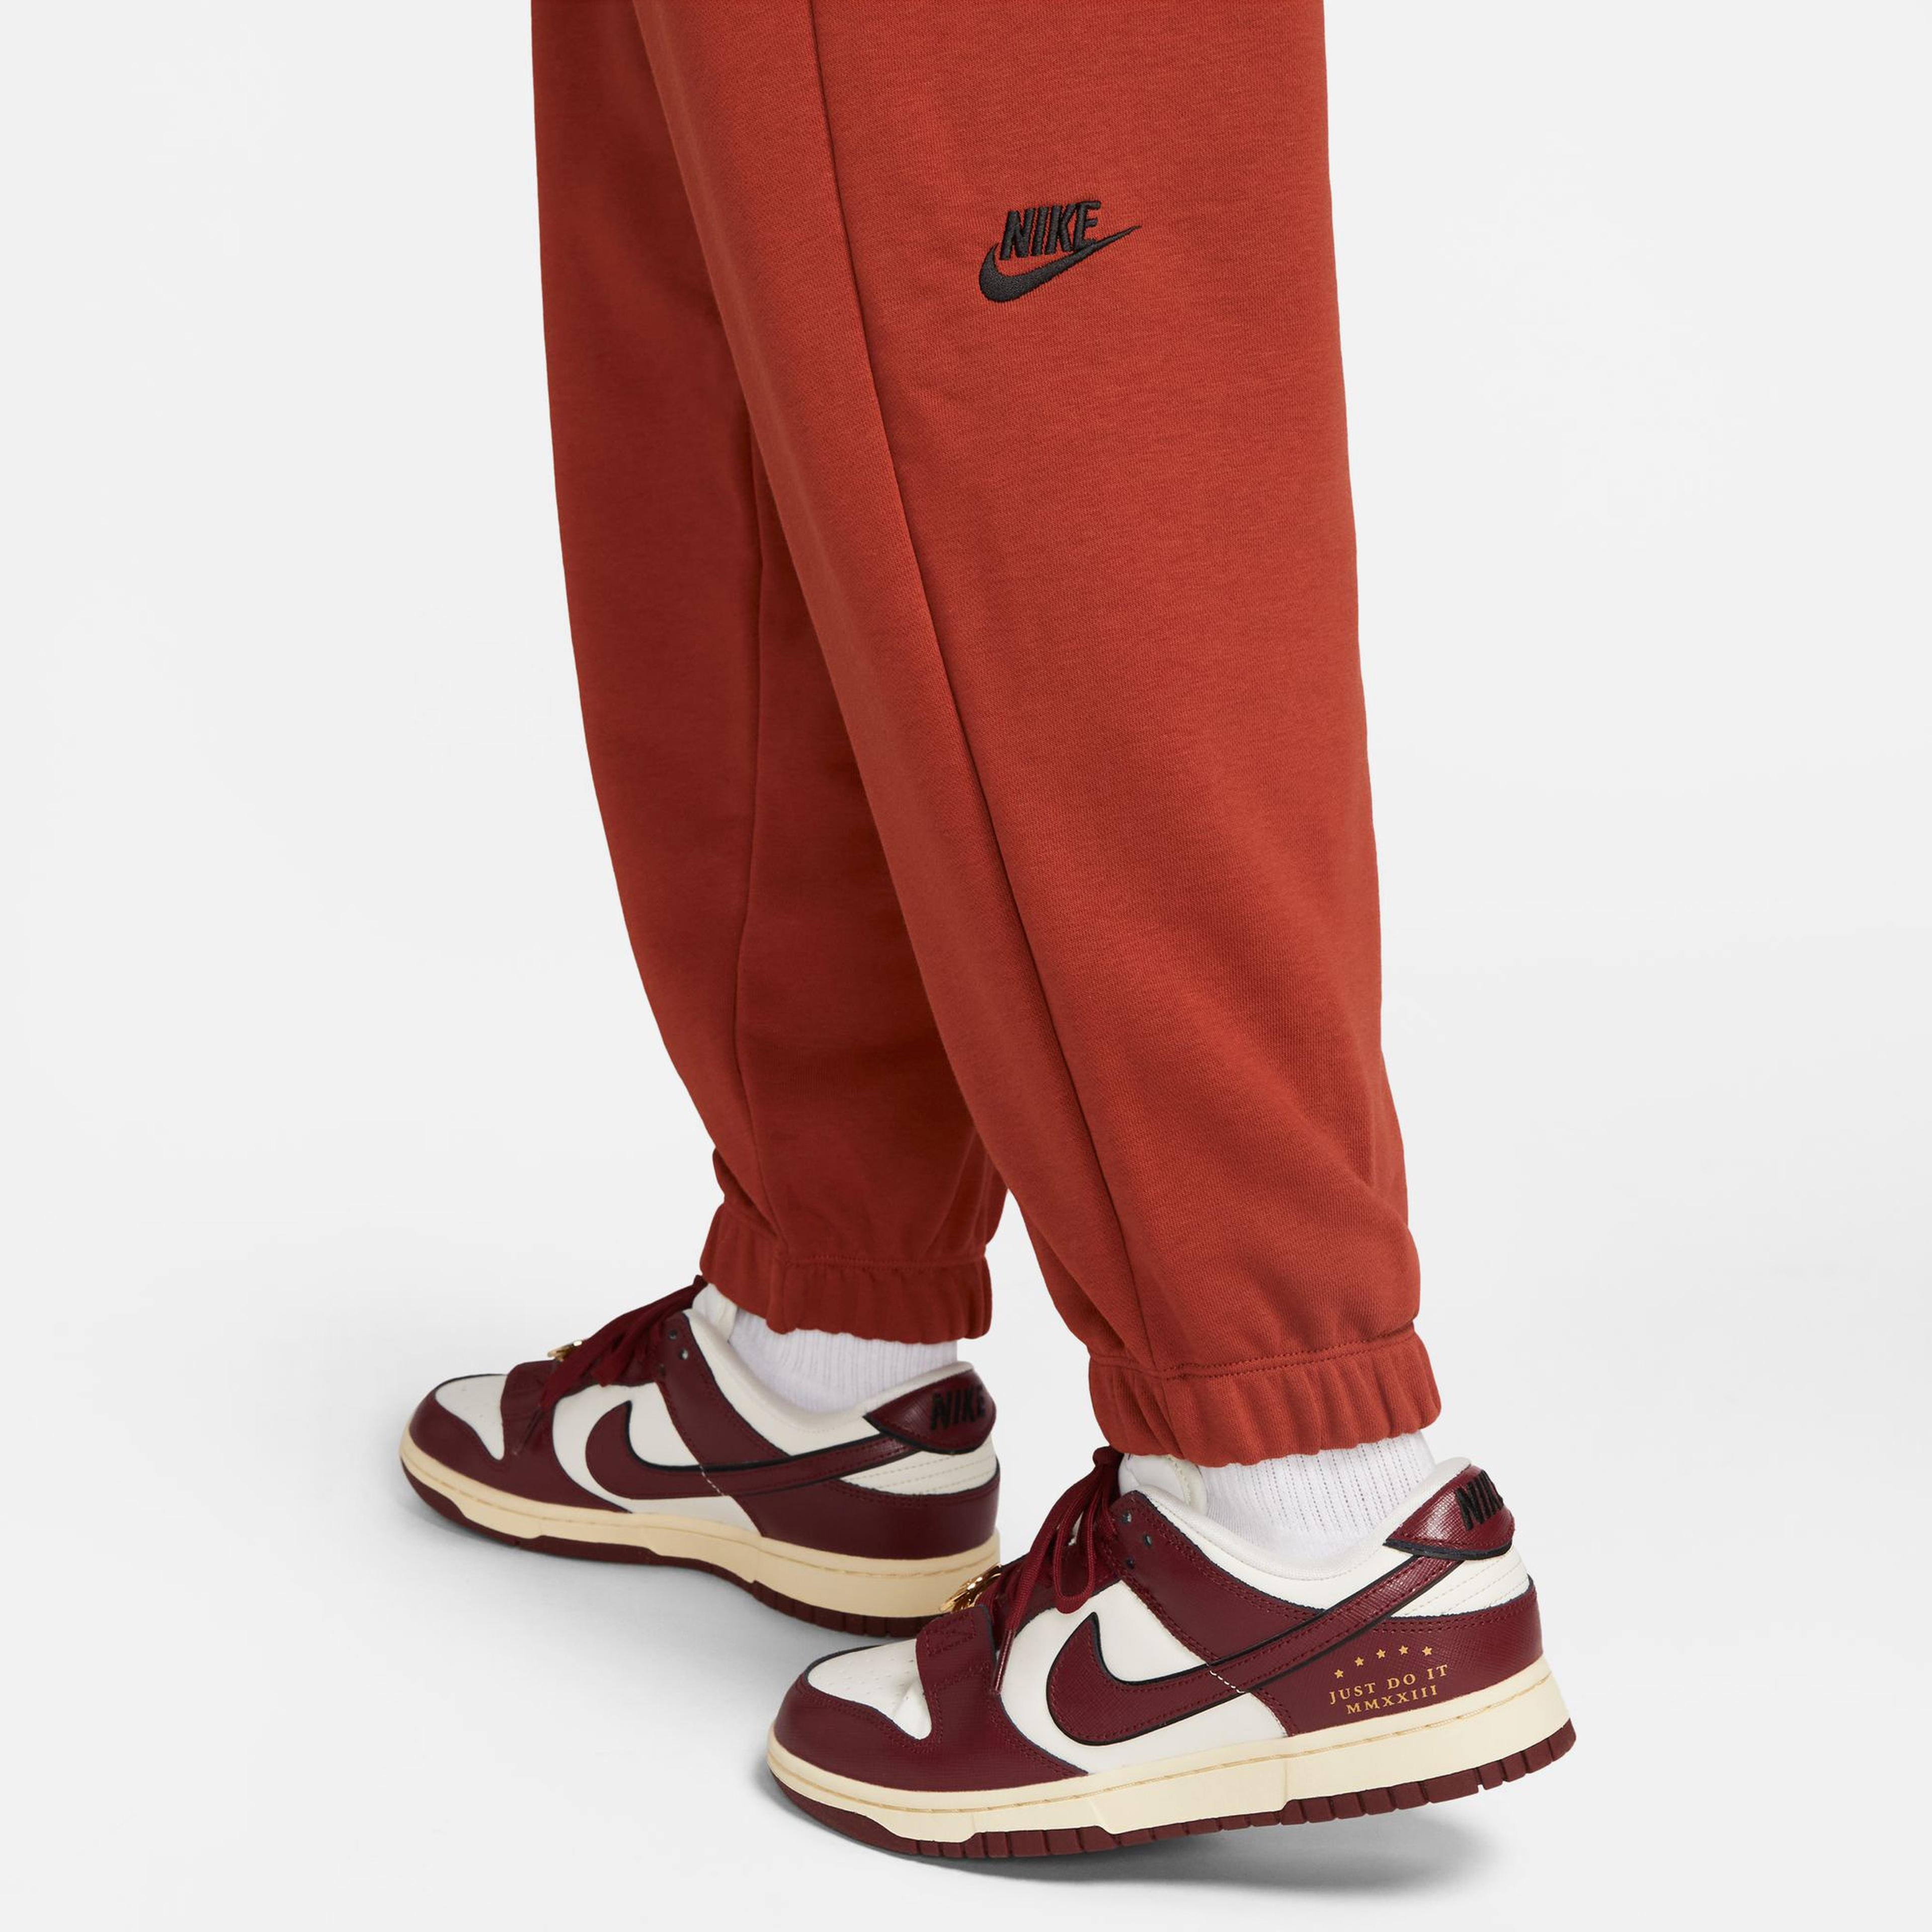 Nike Sportswear Oversized High-Waisted Kadın Kırmızı Eşofman Altı